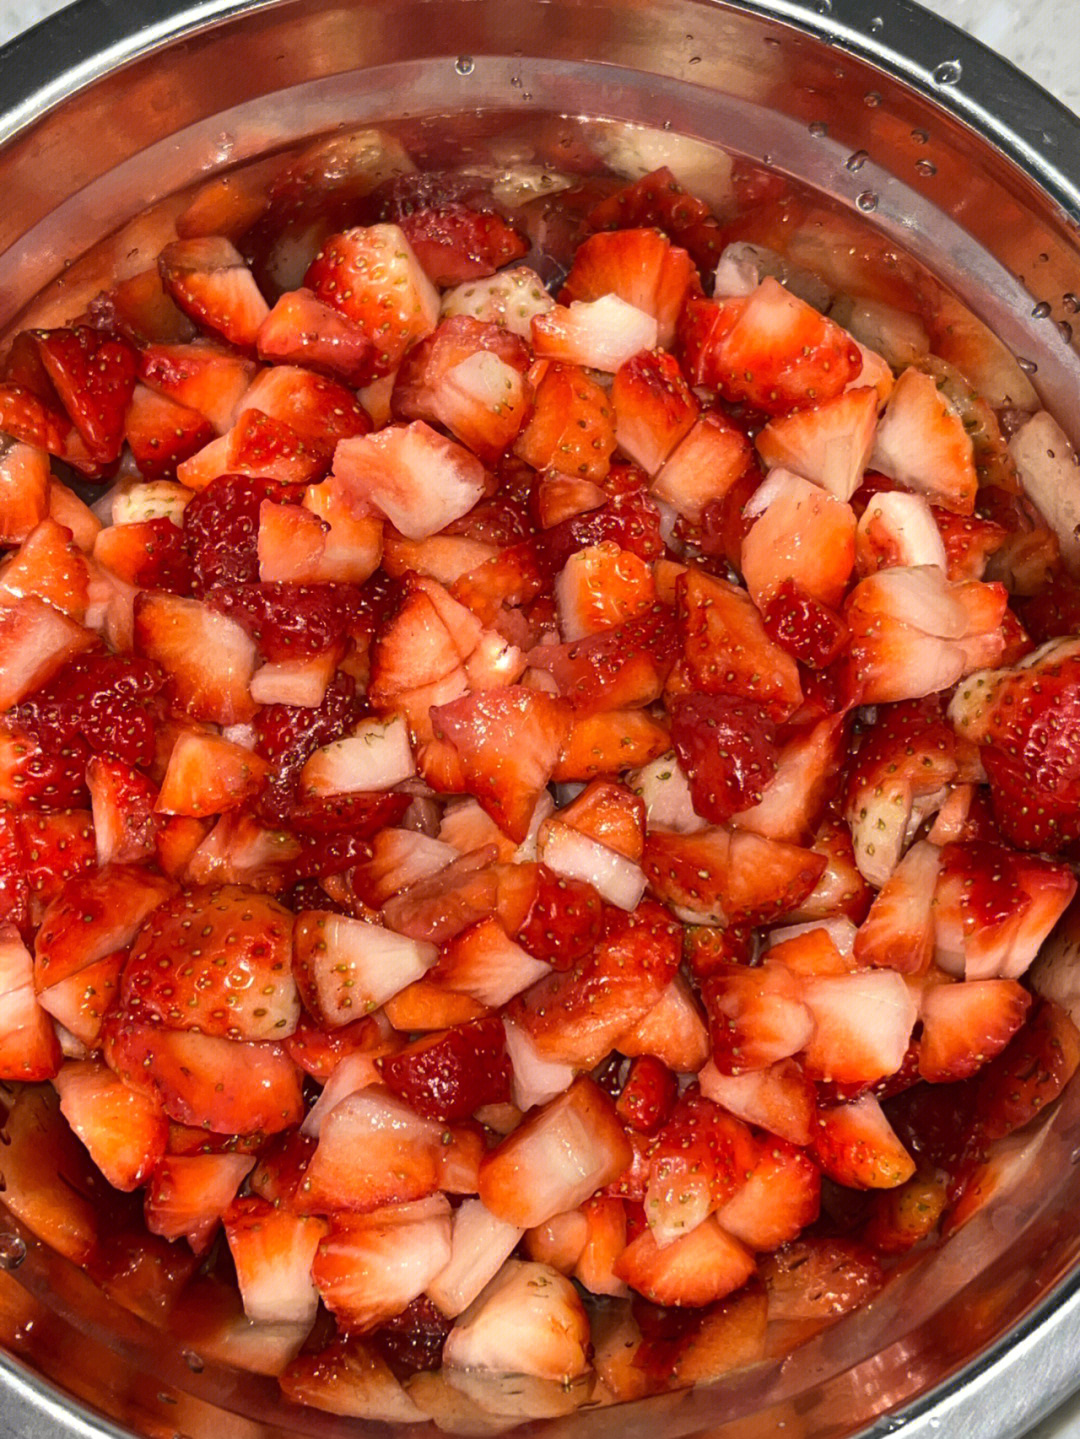 过年买的草莓太多了吃不完只能做成草莓酱啦草莓切成小丁,加两勺糖